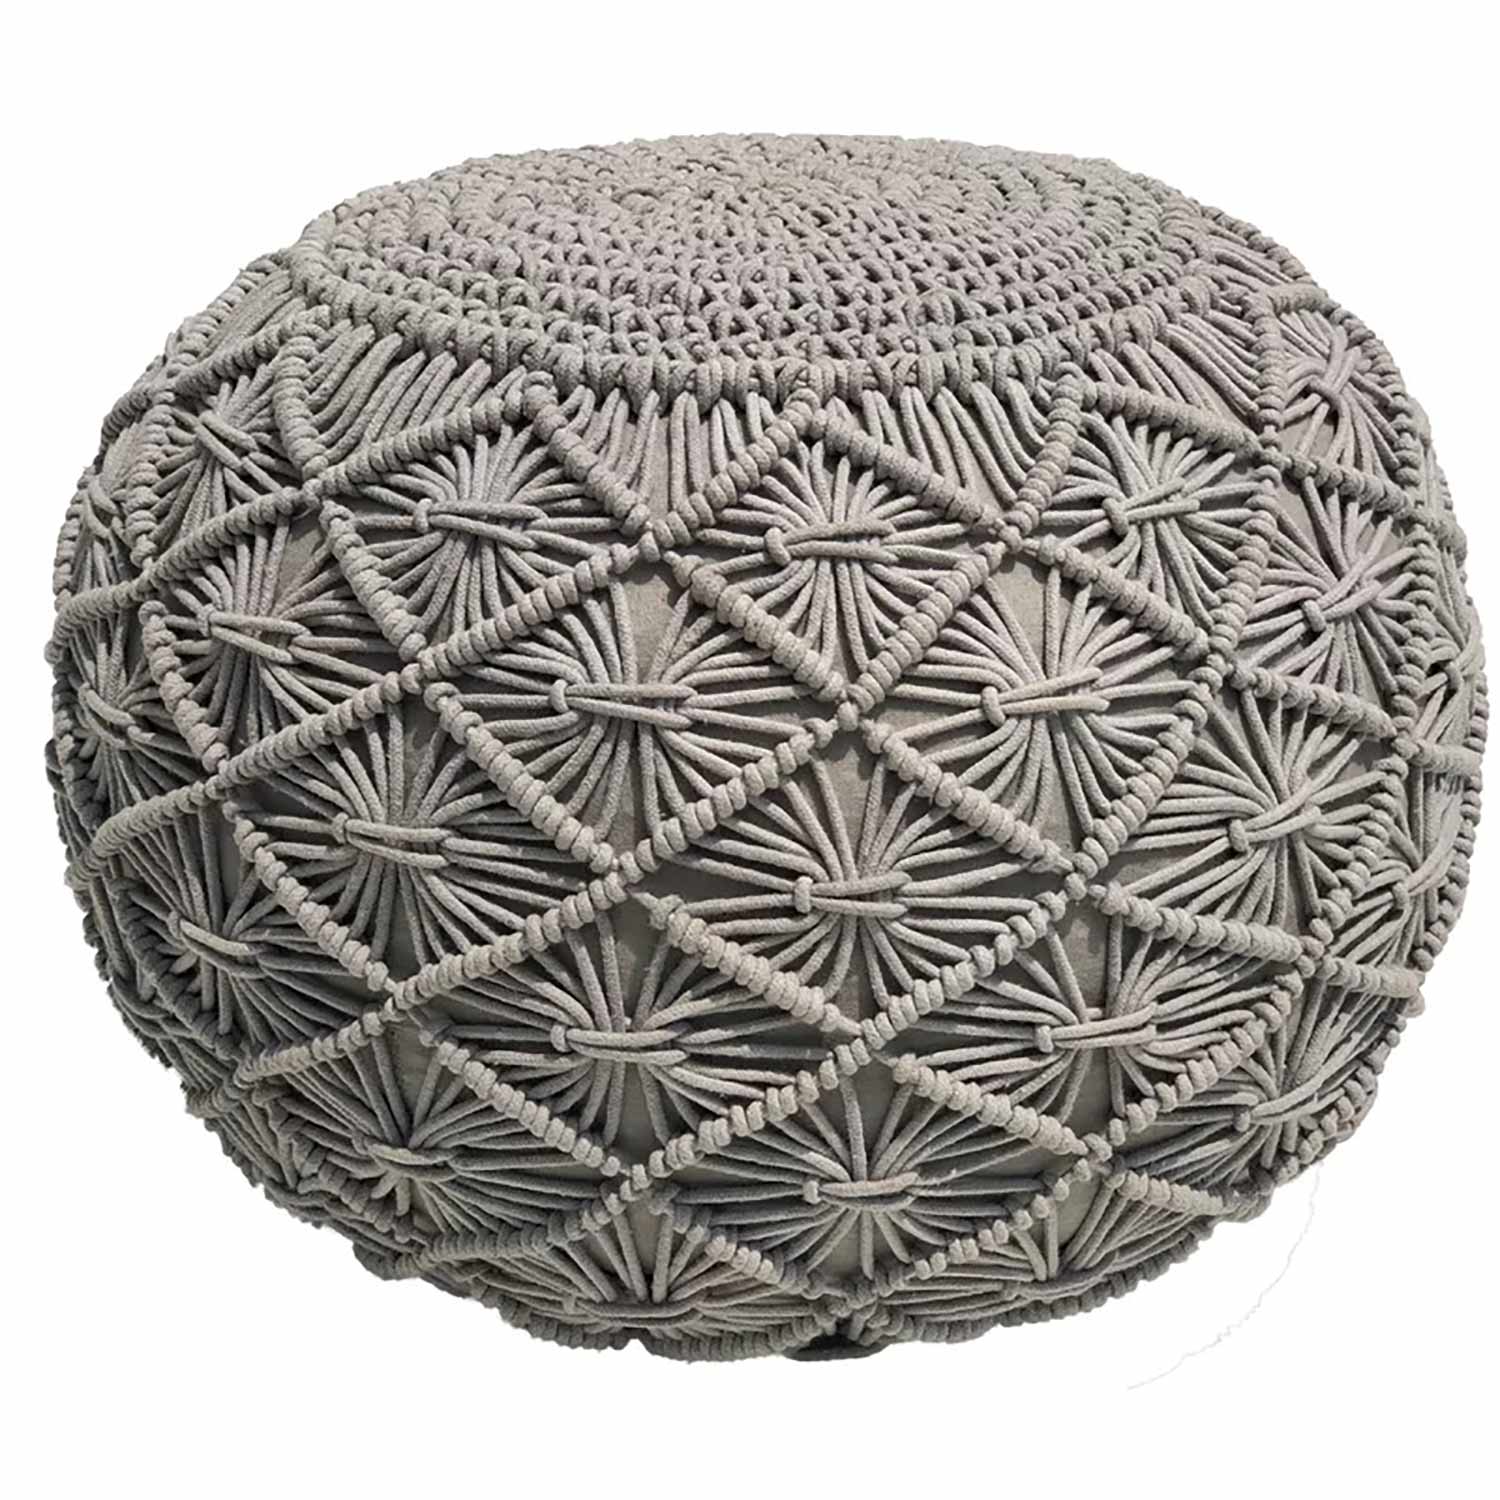 Round knit pouf, grey